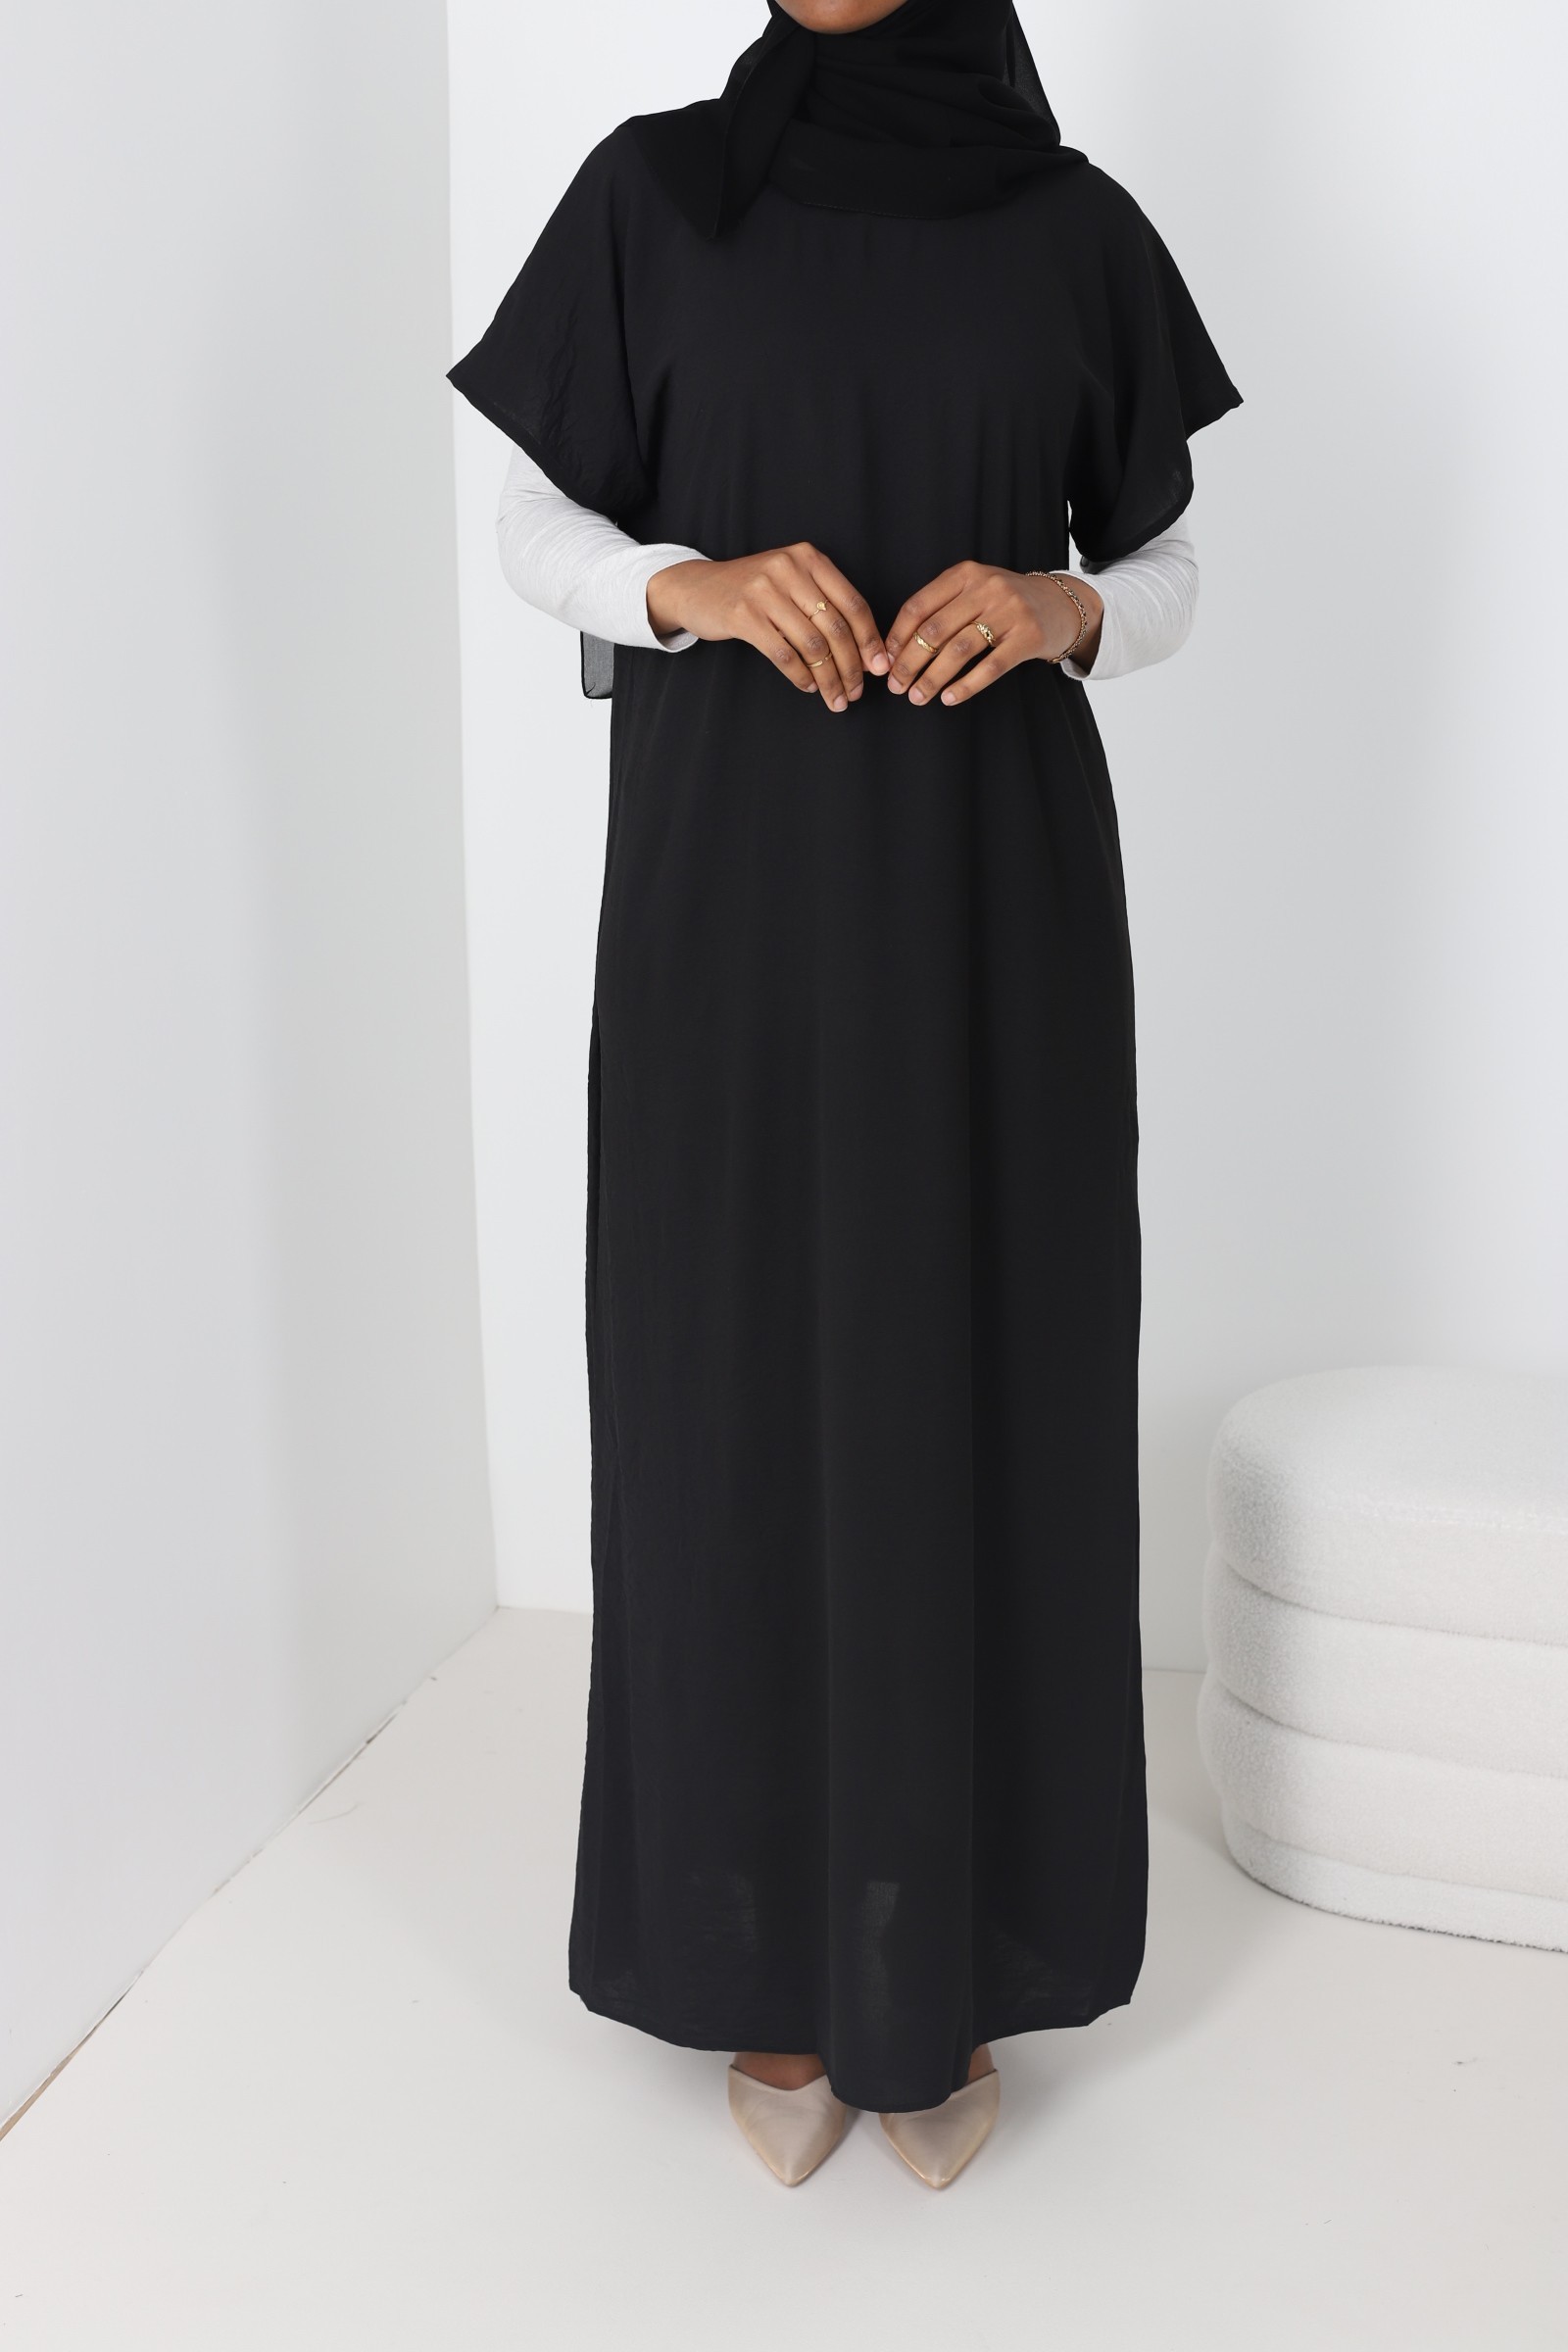 Under dress for abaya, under kimono under abaya, under abayas